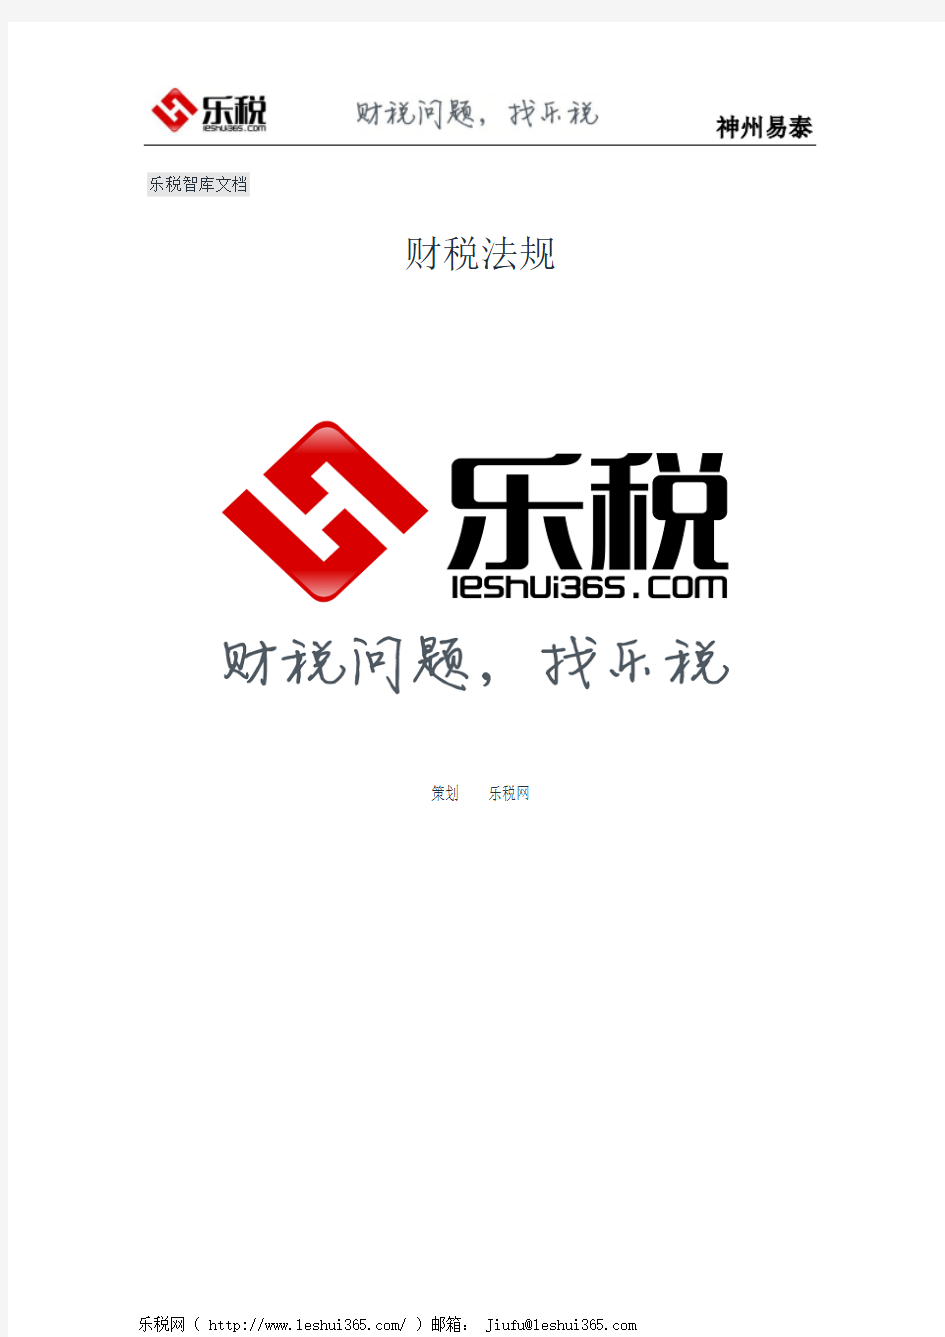 天津市国家税务局关于中央企事业单位在津兴办企业缴纳企业所得税